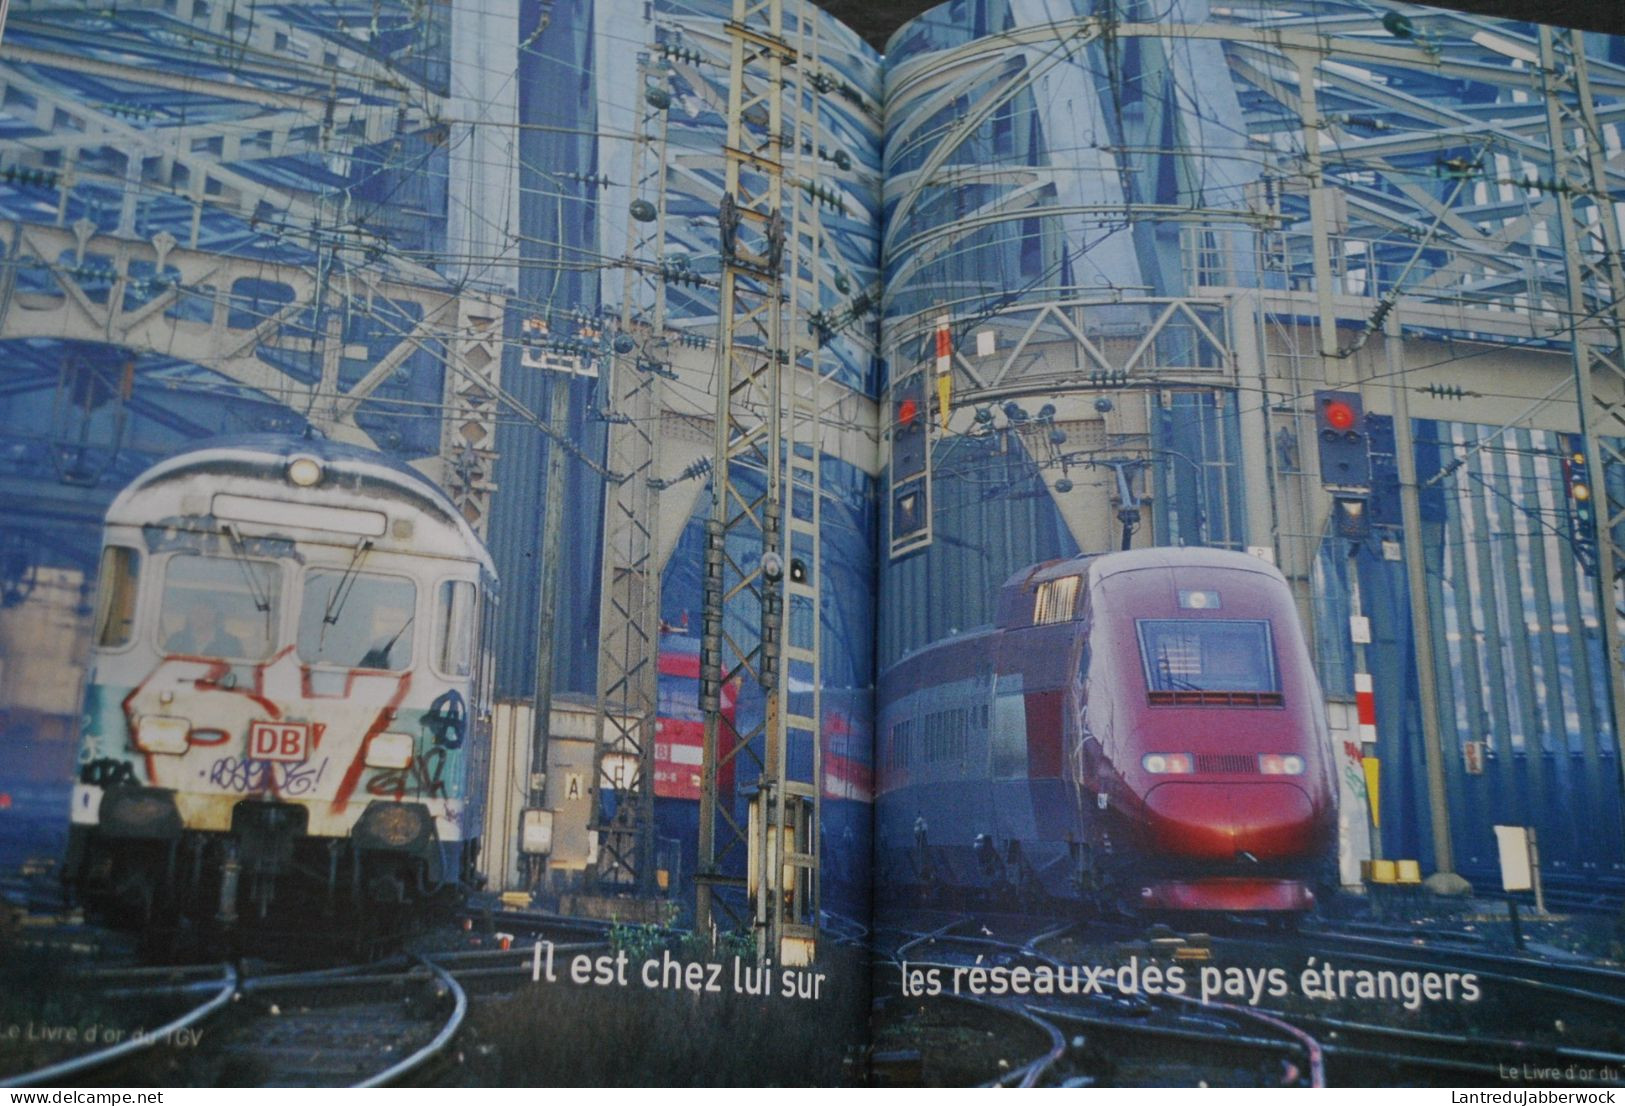 Le Livre d'or du TGV La vie du rail 2006 25 ans d'aventures SNCF 1981 Eurostar Thalys Med Lille Paris Lyon Méditerranée